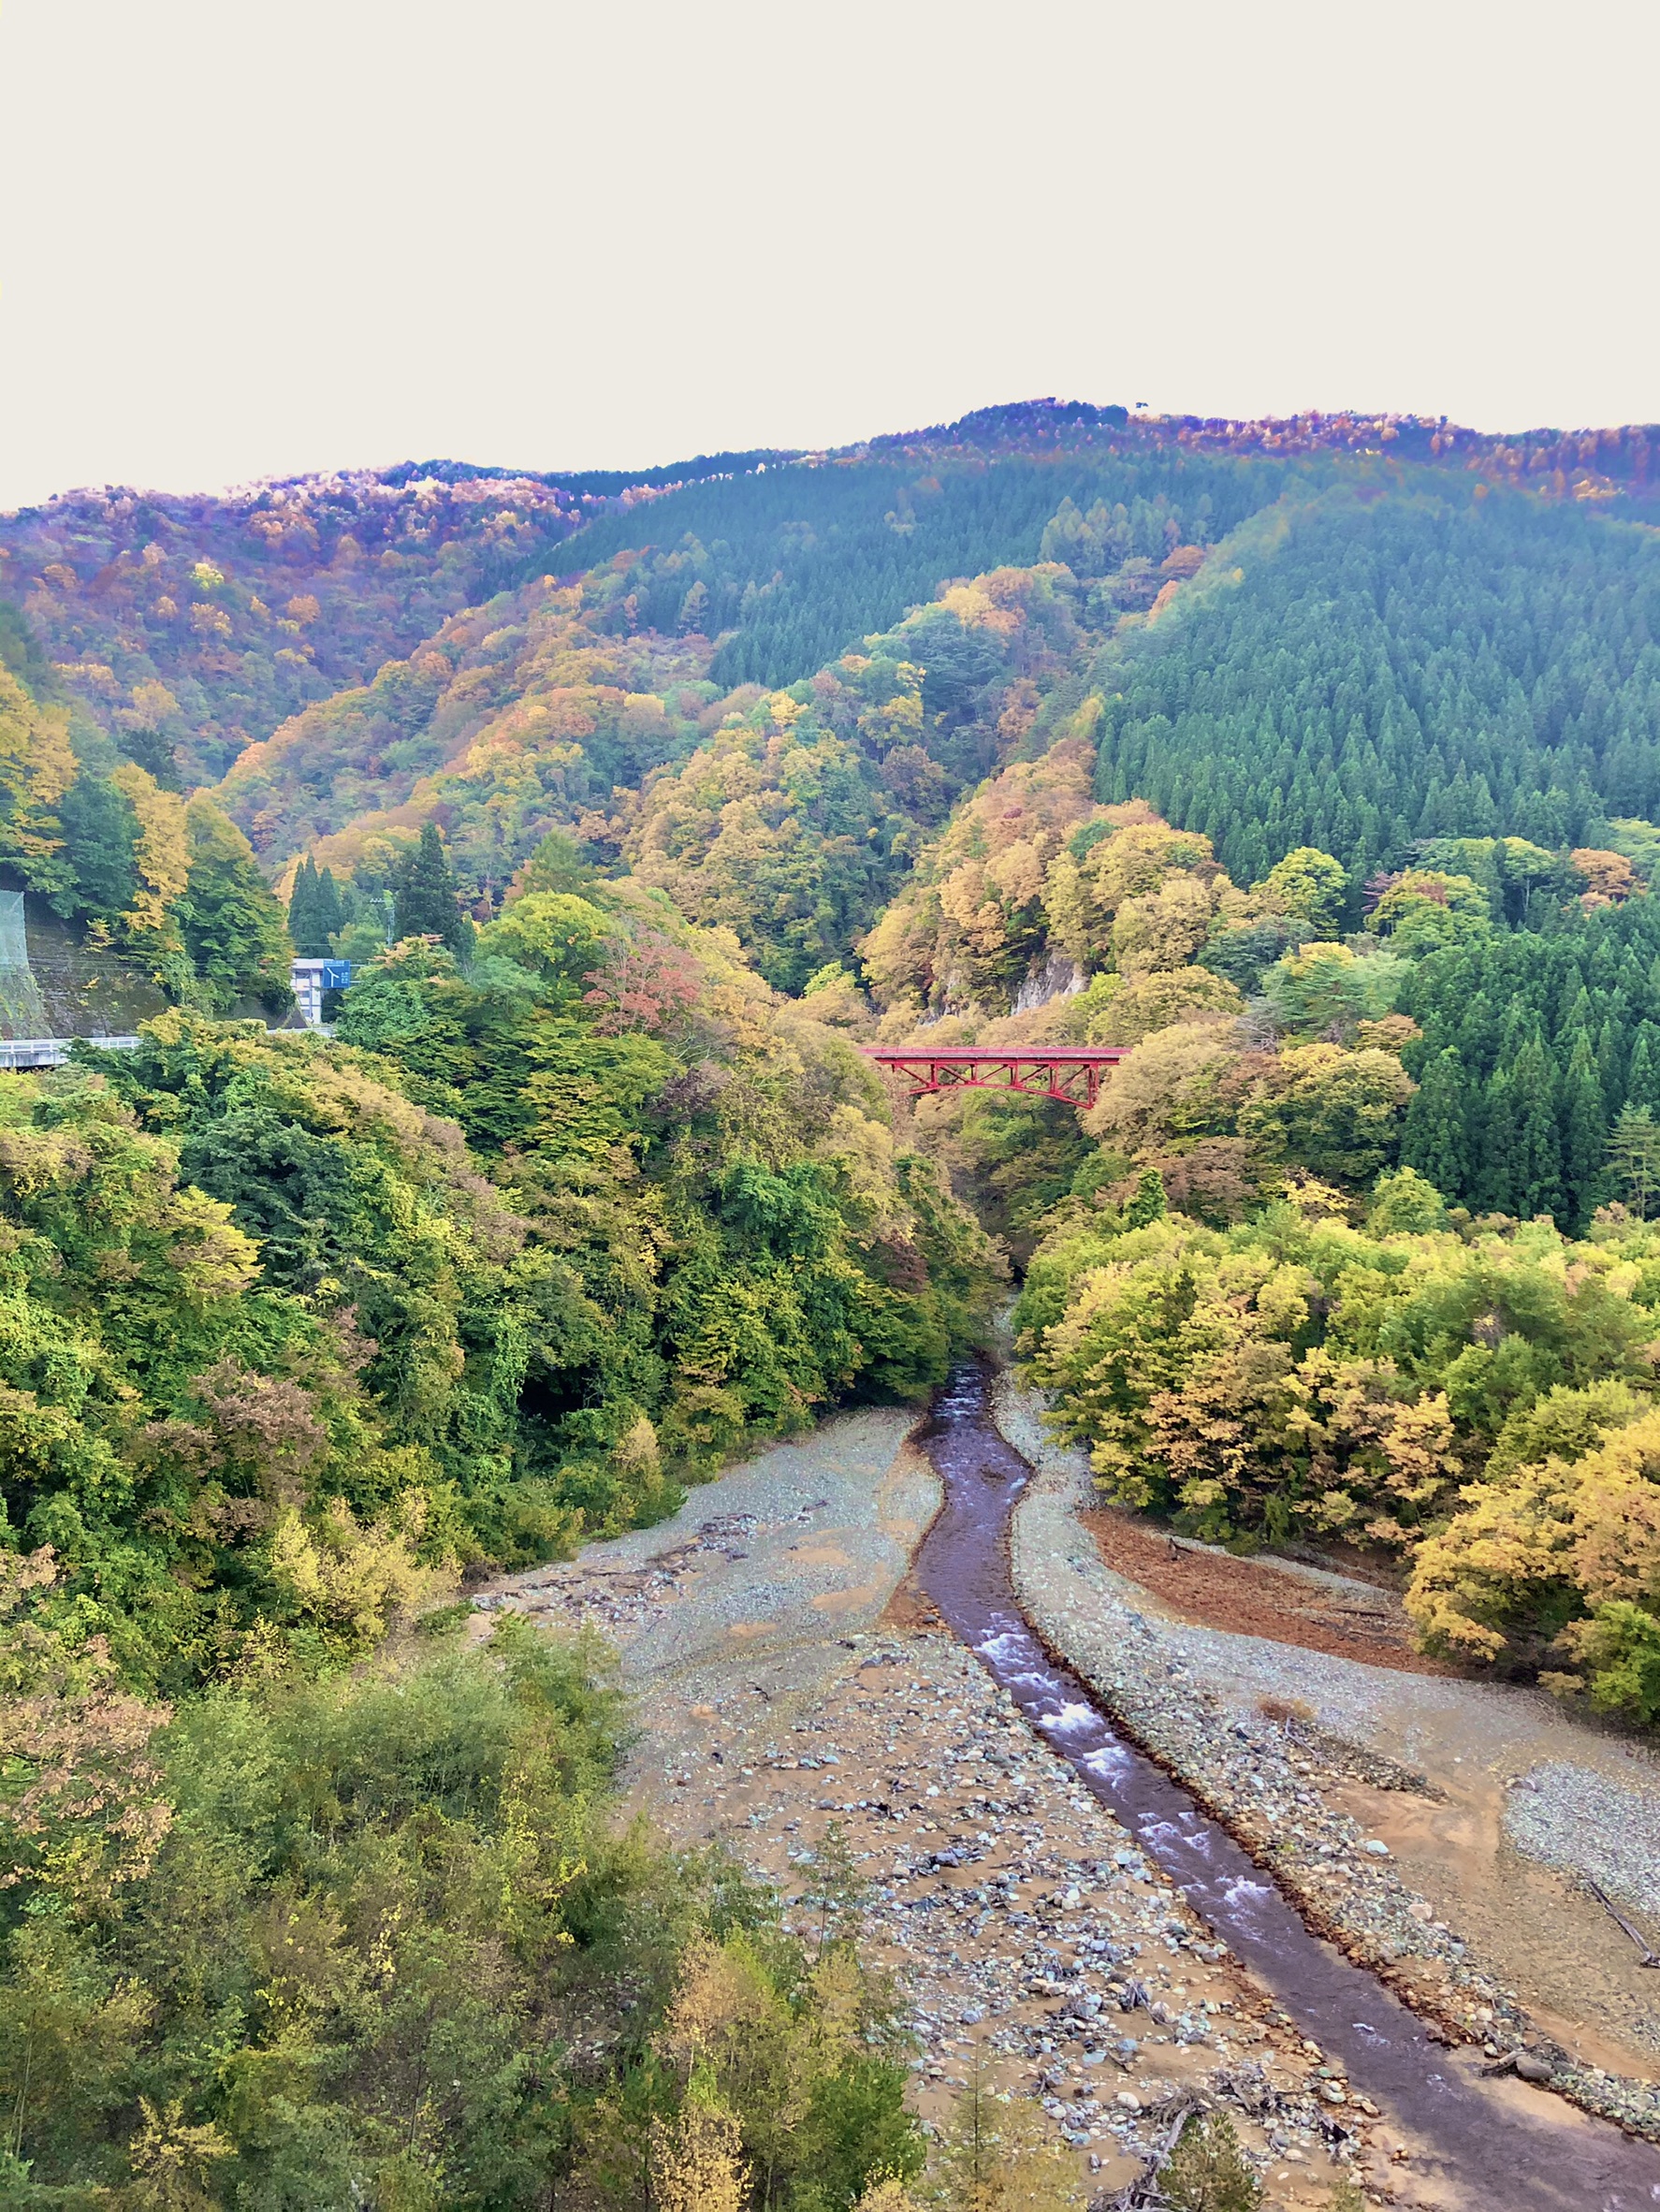 長野県高山村 松川渓谷 をドローン撮影しました 長野県 映像制作 番組ロケ依頼 ドローン撮影はミヤテック